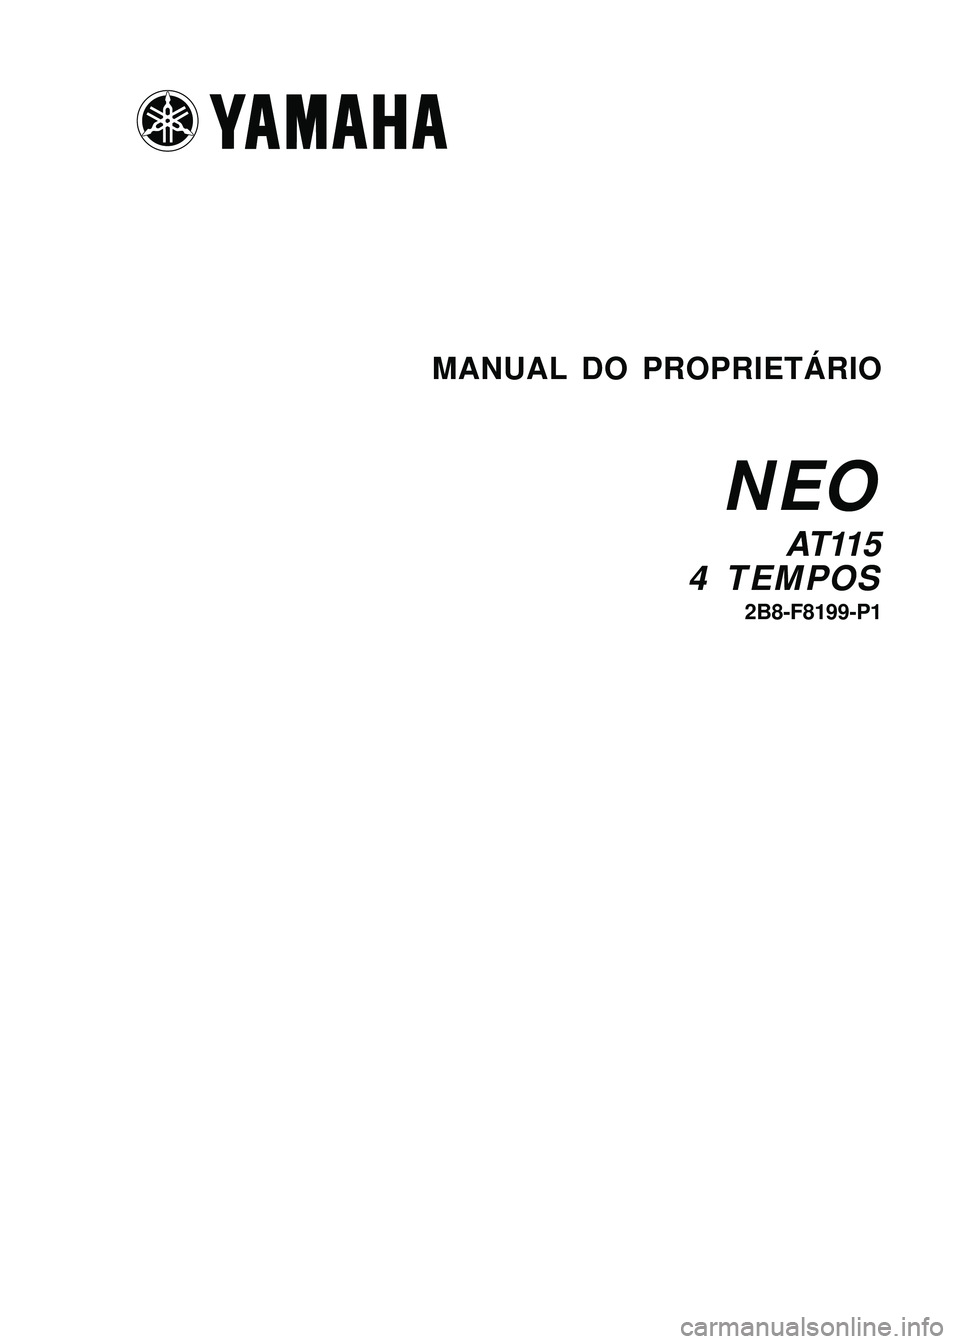 YAMAHA NEO115 2006  Manual de utilização (in Portuguese) I
I2B8-F8199-P1
AT 11 5
4 TEMPOS
MANUAL DO PROPRIETÁRIO
NEO
2B8-F8199-P1
AT 11 5
4 TEMPOS
MANUAL DO PROPRIETÁRIO
NEO 